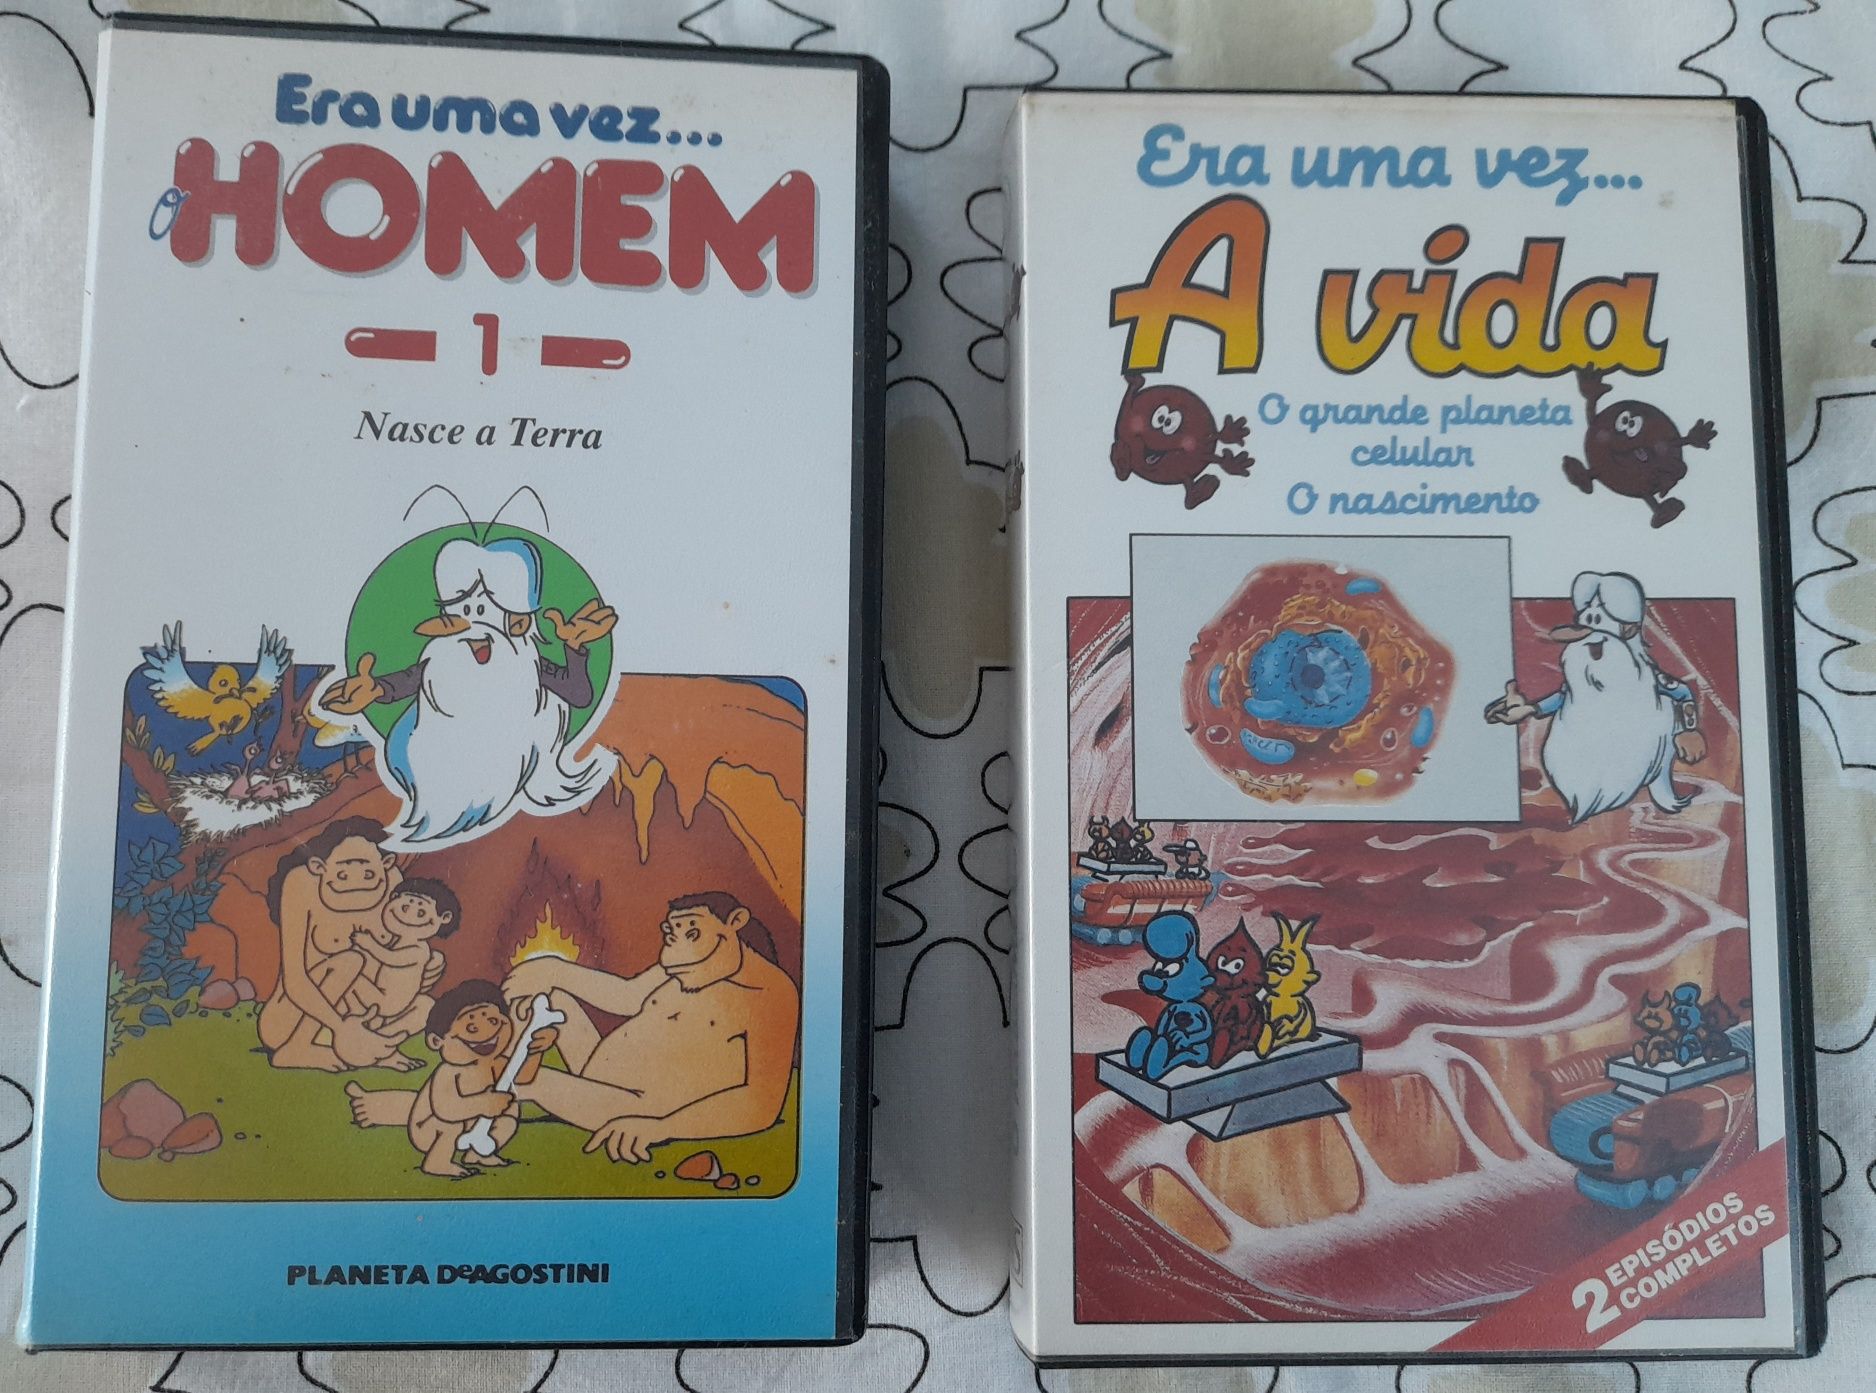 CONJUNTO de Cassetes VHS de filmes de animação